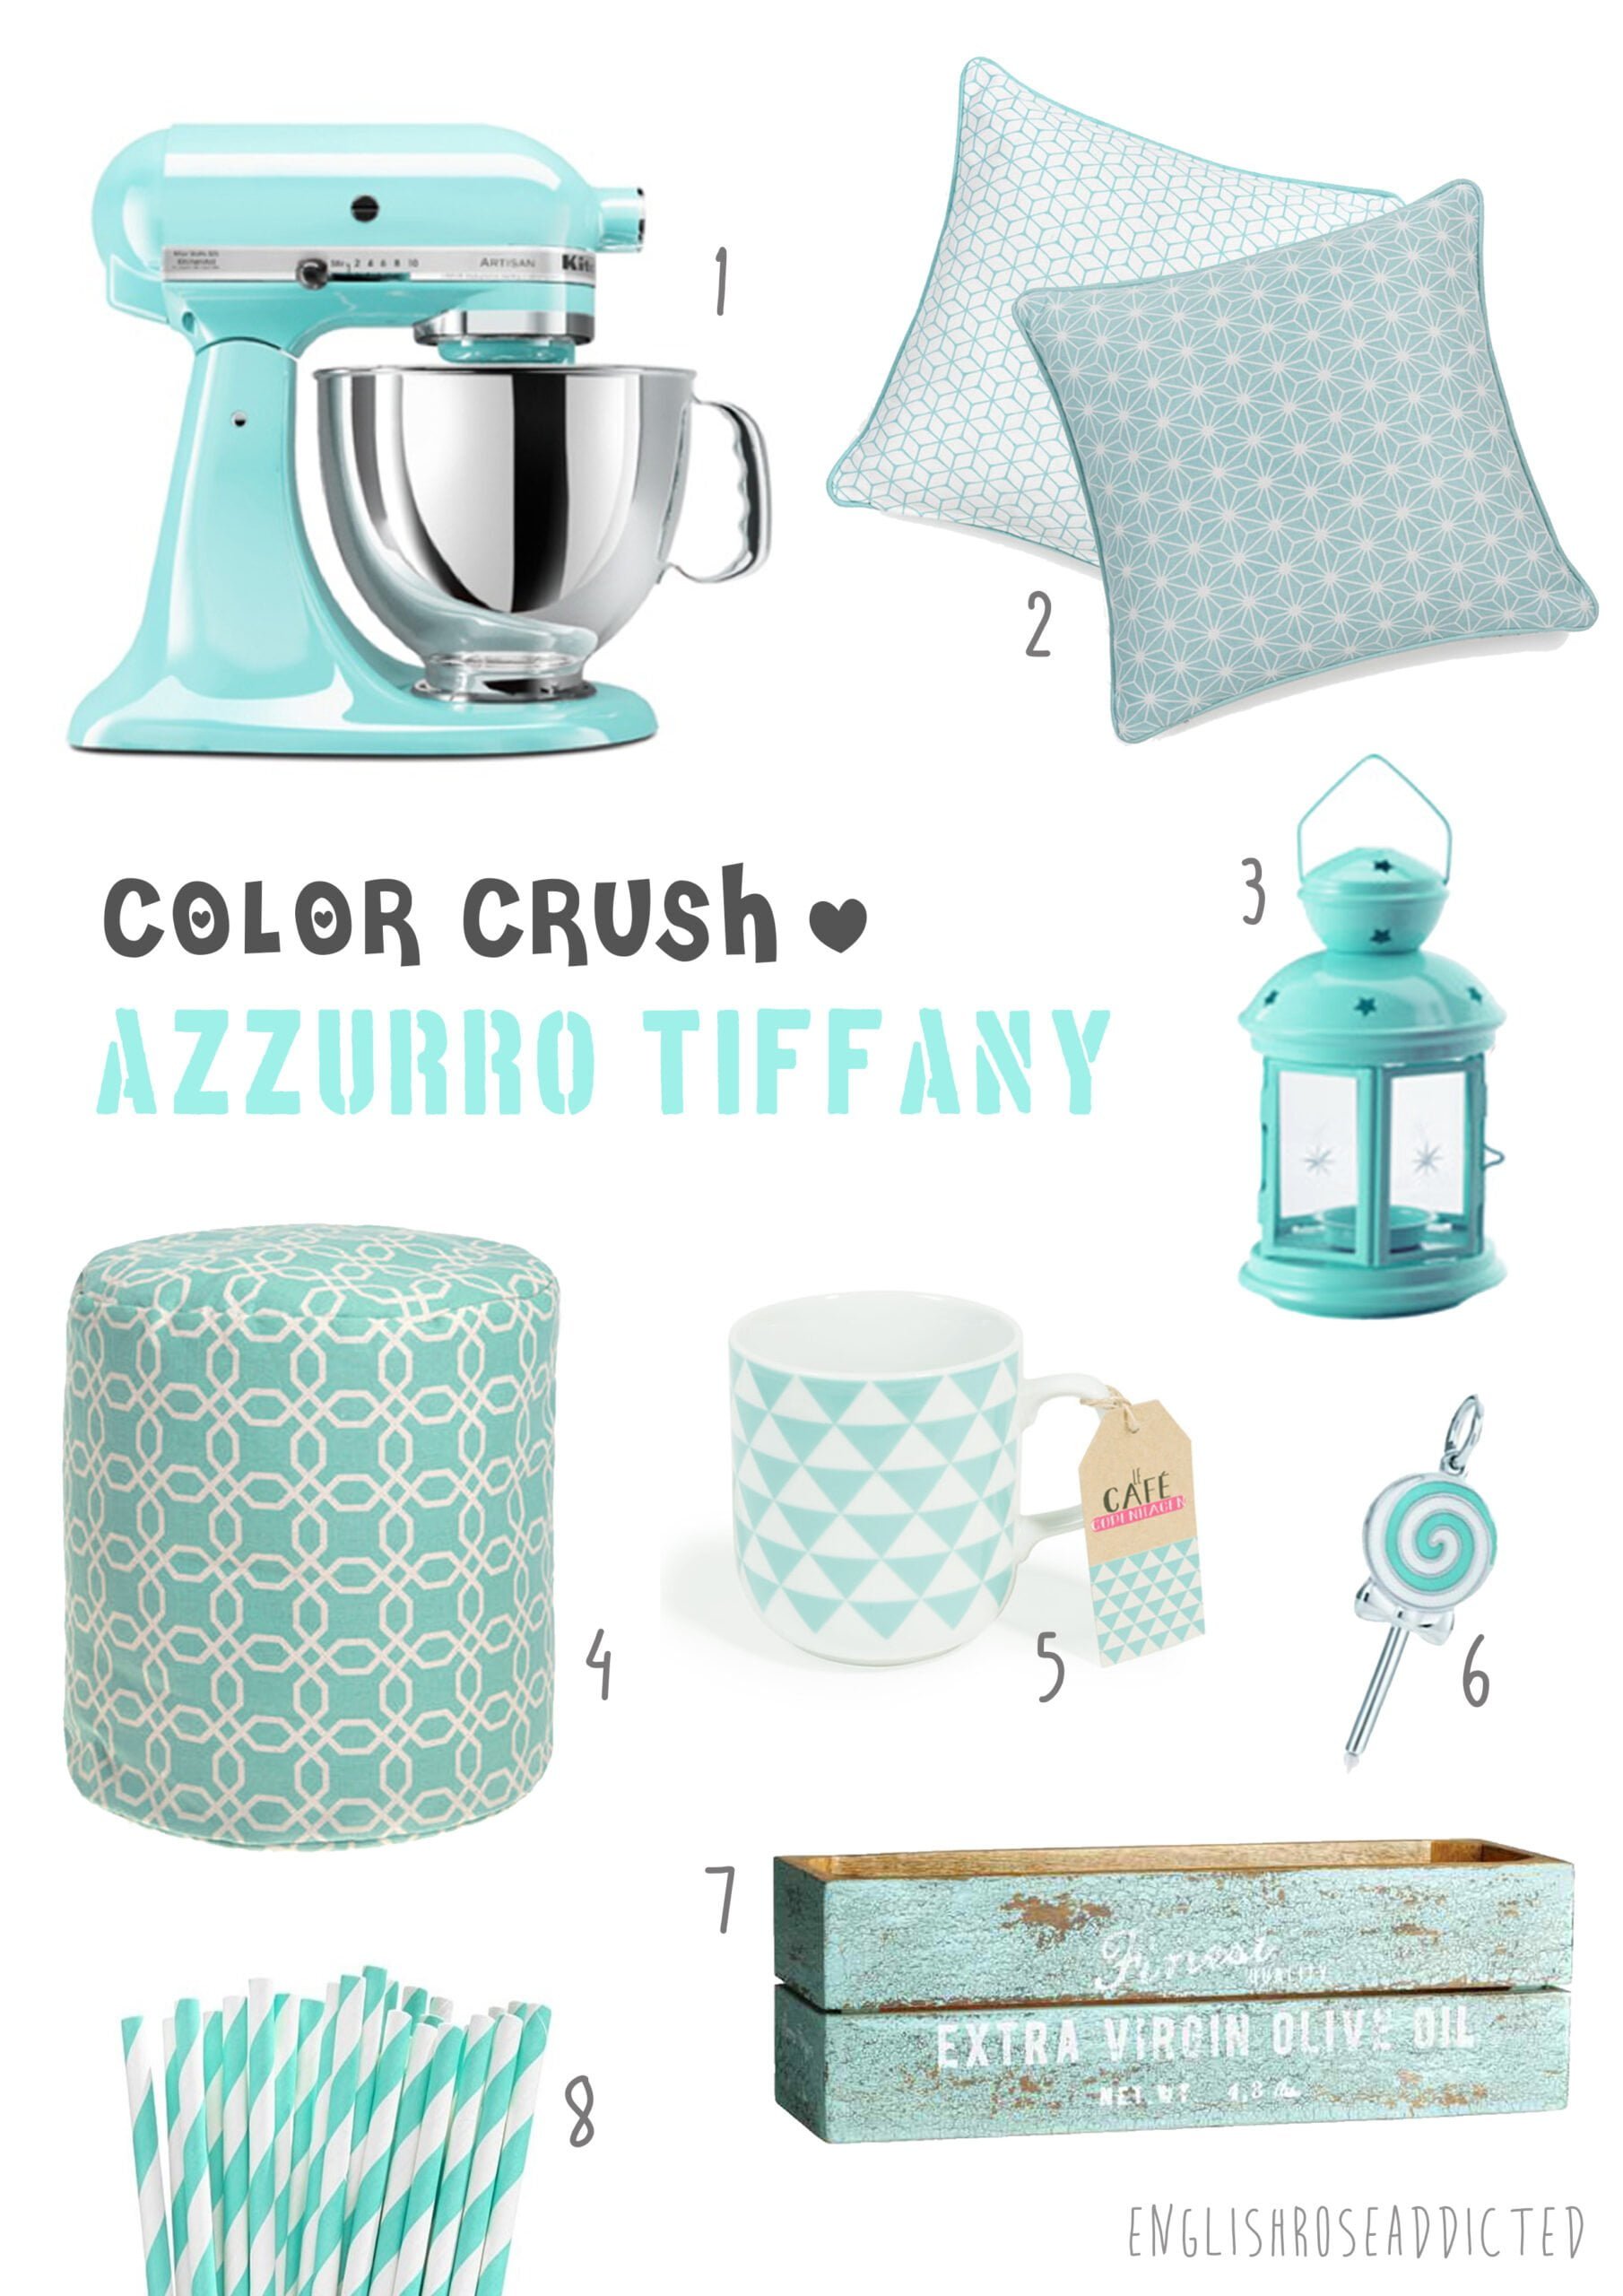 Color Tiffany - Idee per arredare